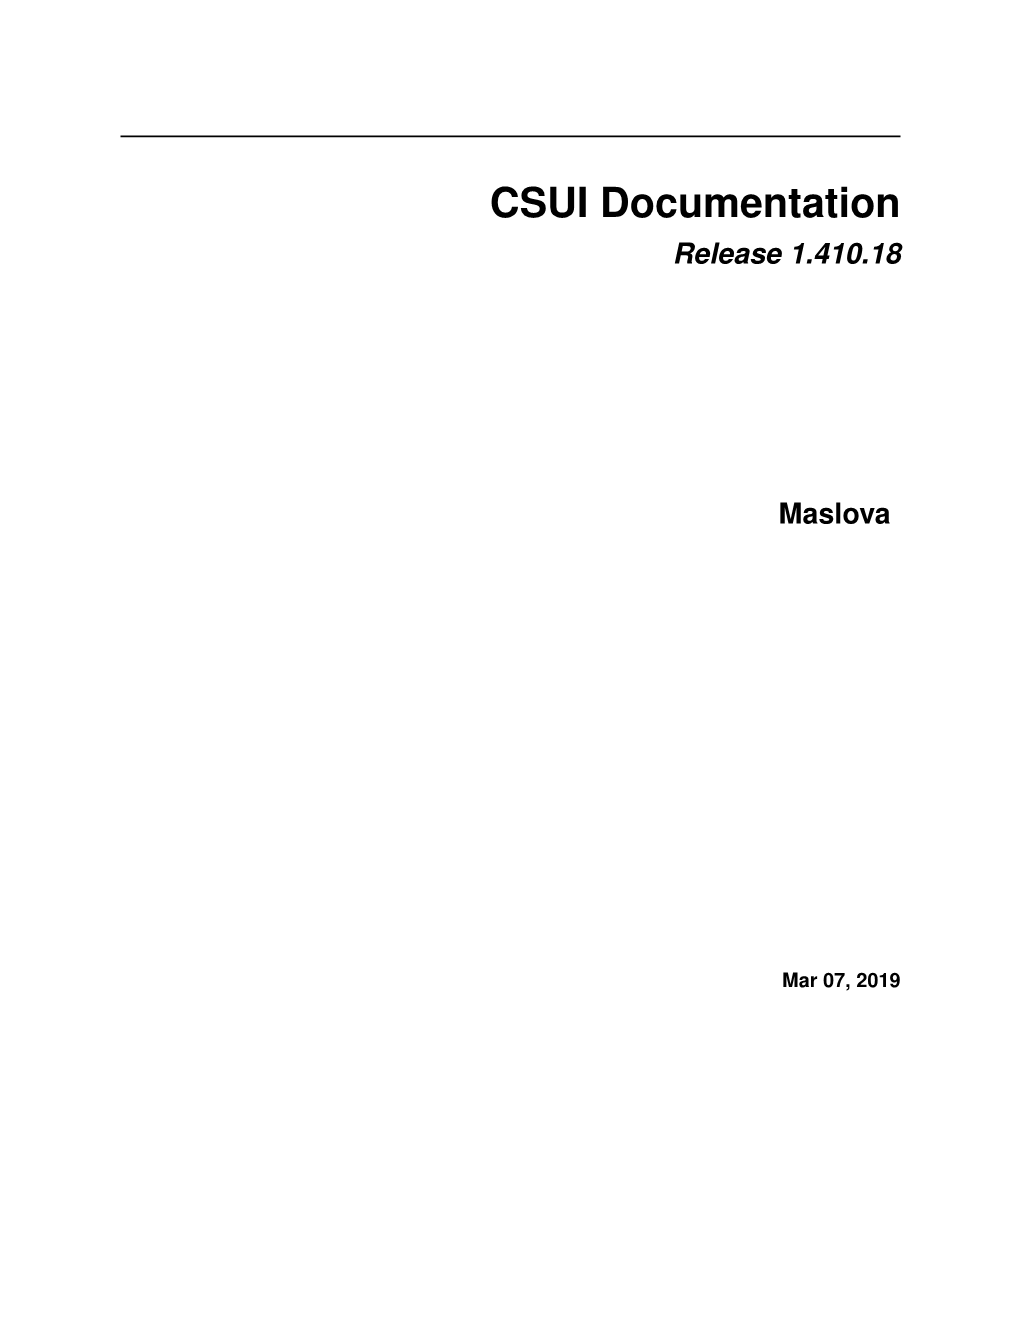 CSUI Documentation Release 1.410.18